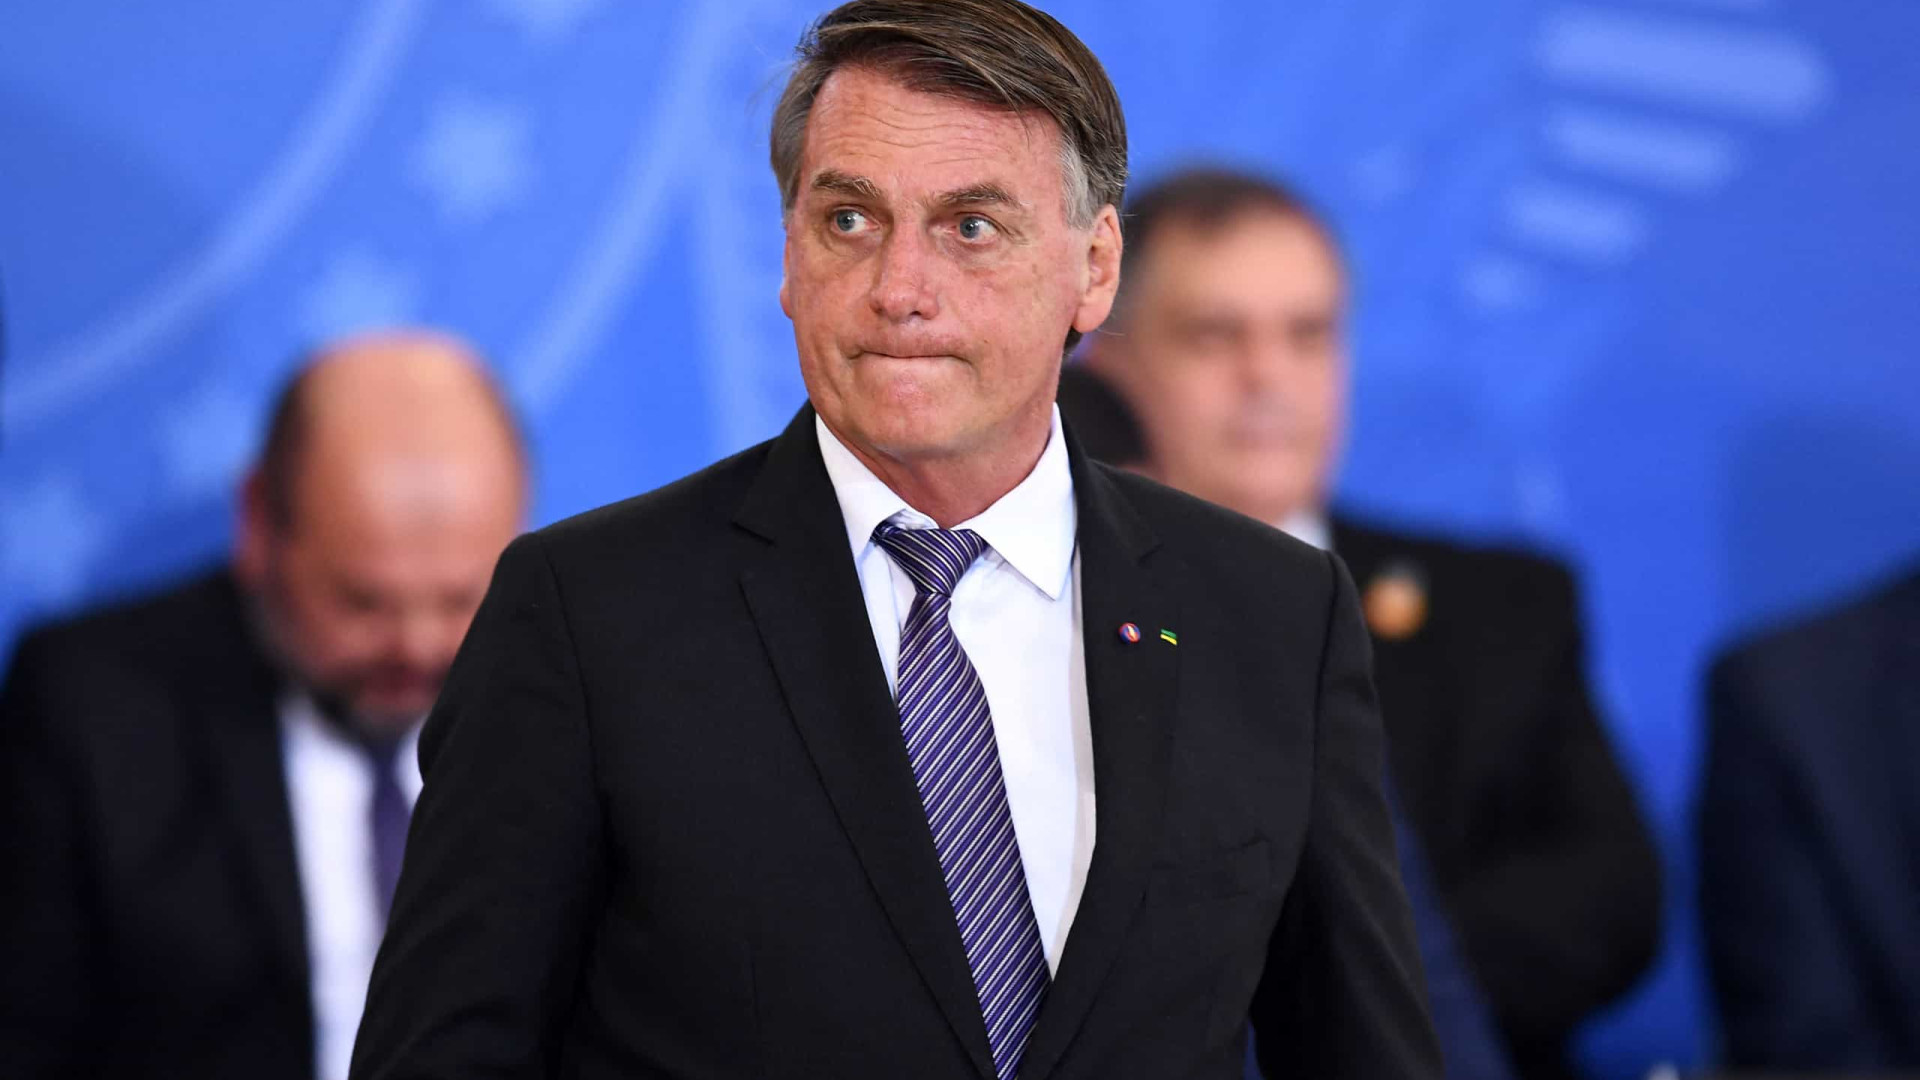 Bolsonaro encontra investigados e lobistas em evento de arrecadação para campanha